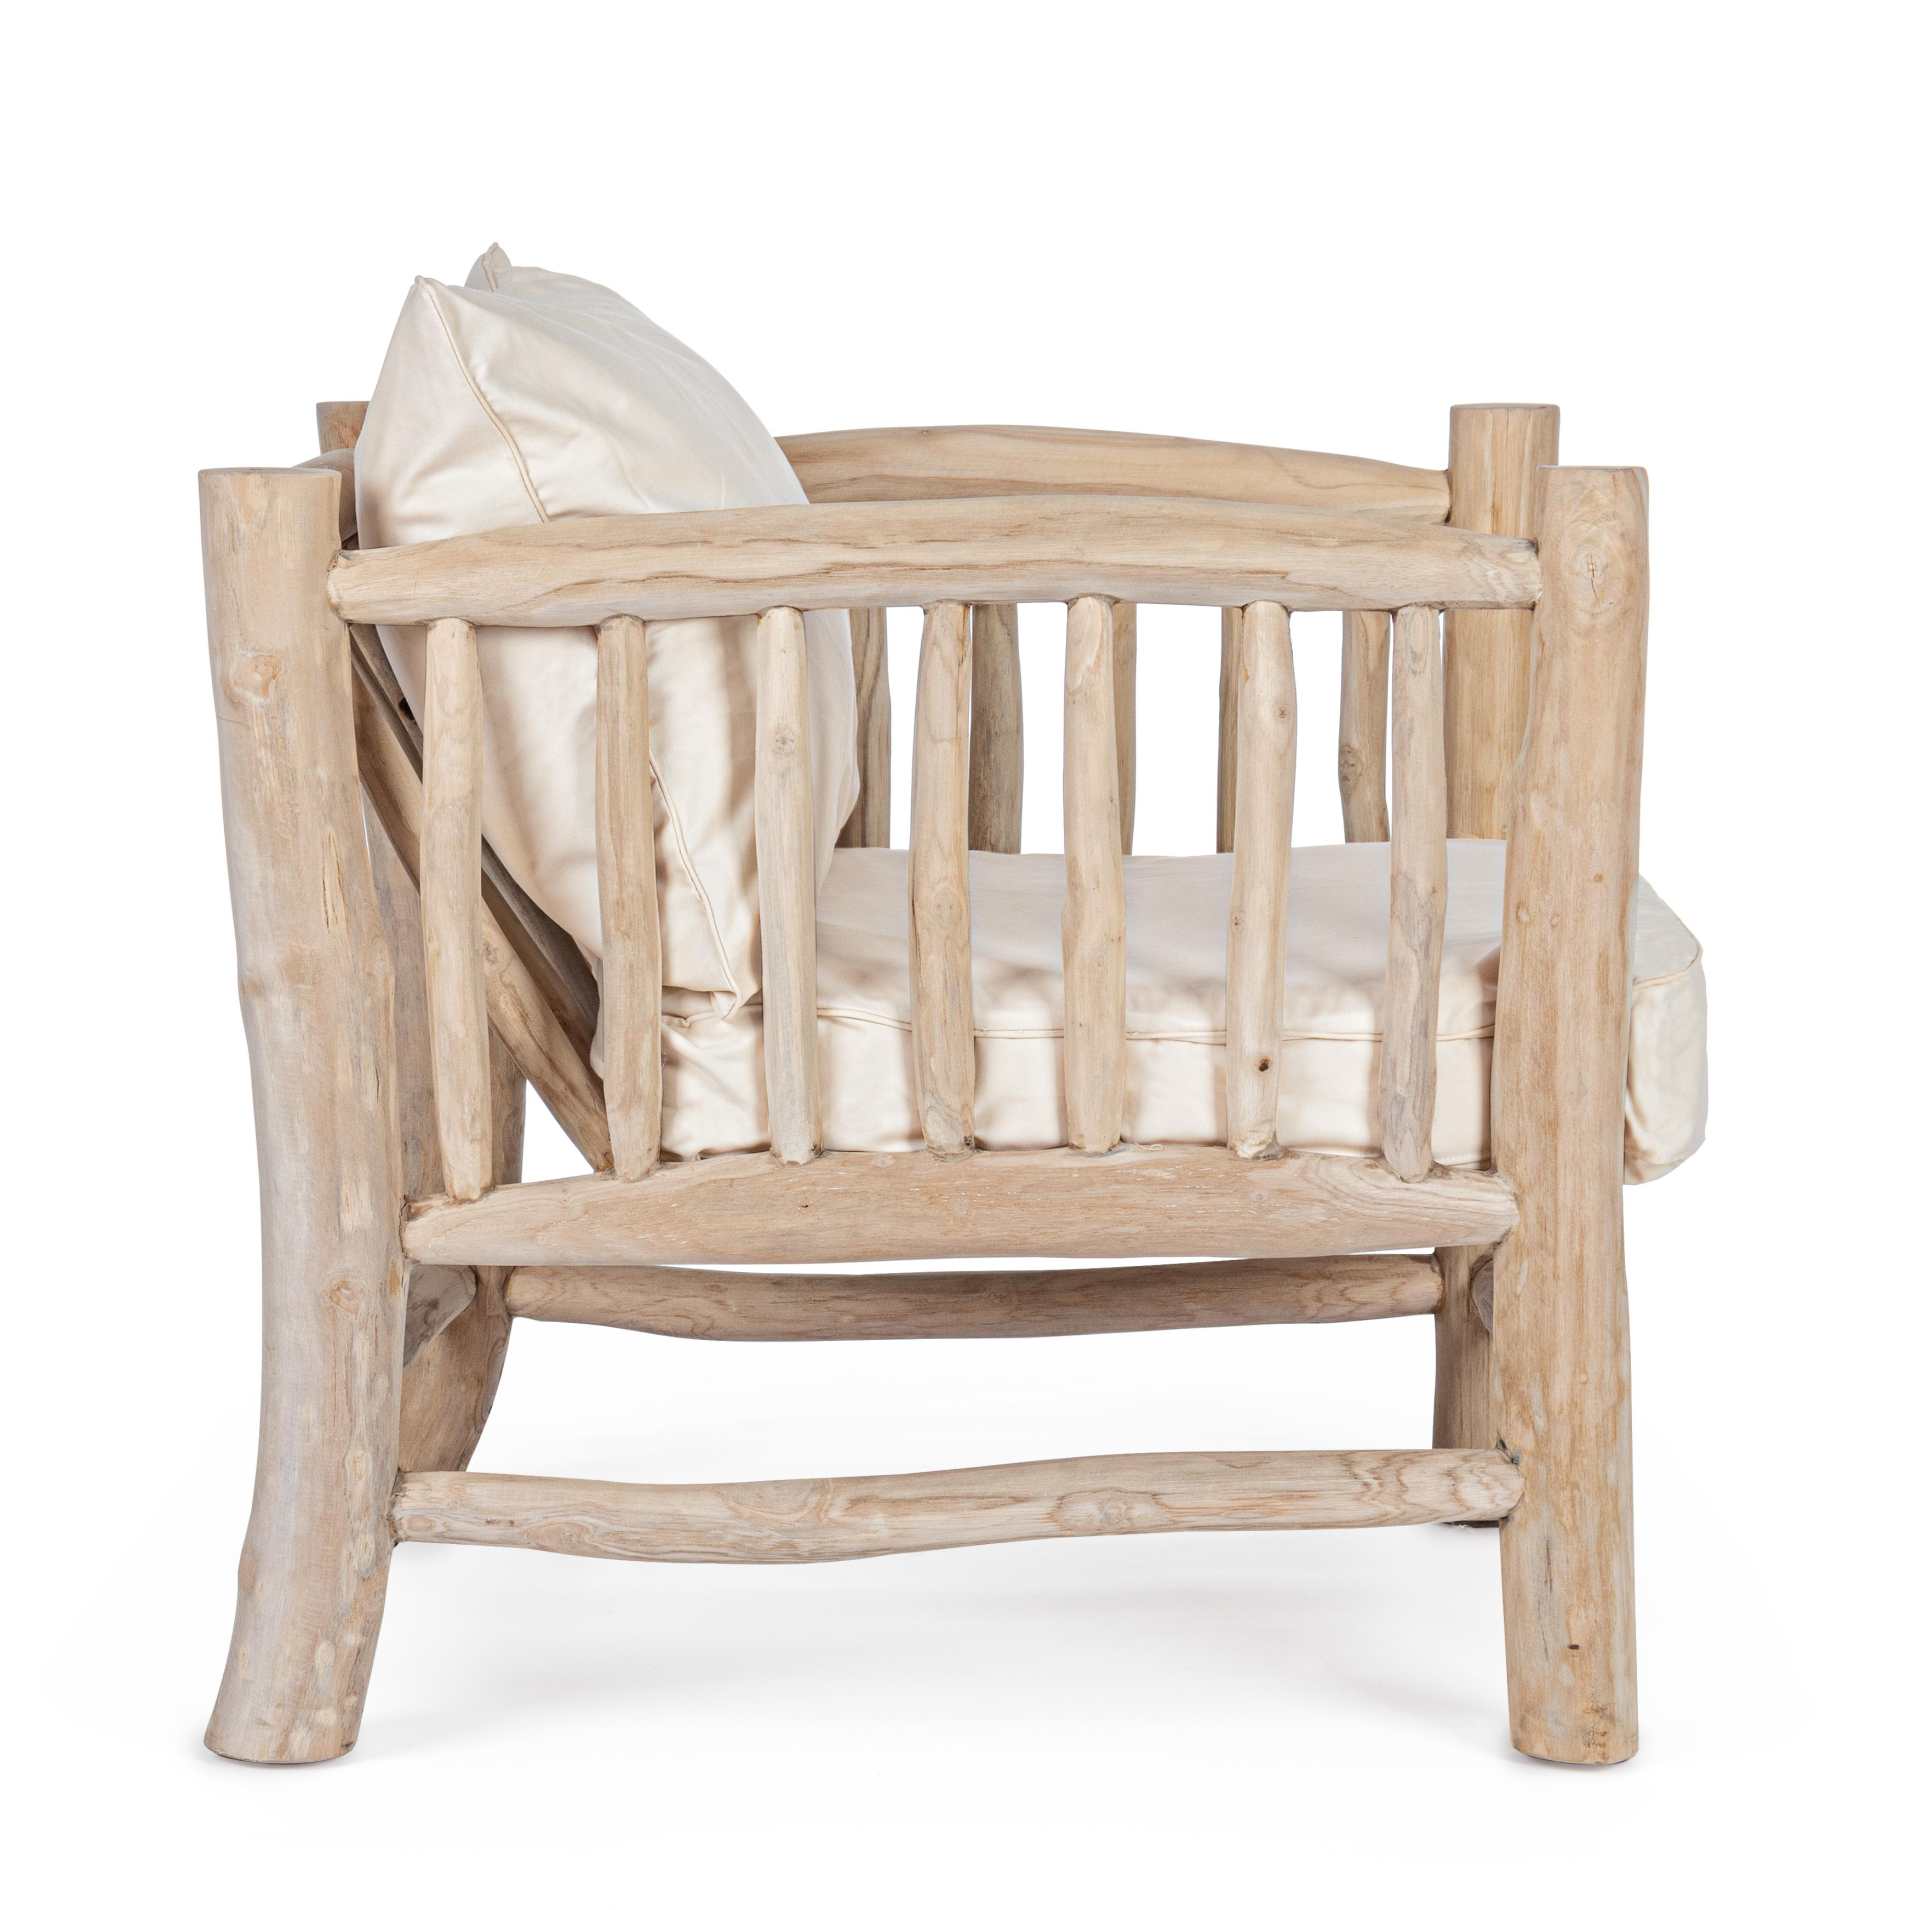 Der Sessel Sahel überzeugt mit seinem klassischen Design. Gefertigt wurde er aus Teakholz, welches einen natürlichen Farbton besitzt. Die Kissen sind aus einem Mix aus Baumwolle und Leinen. Der Sessel besitzt eine Sitzhöhe von 43 cm. Die Breite beträgt 70